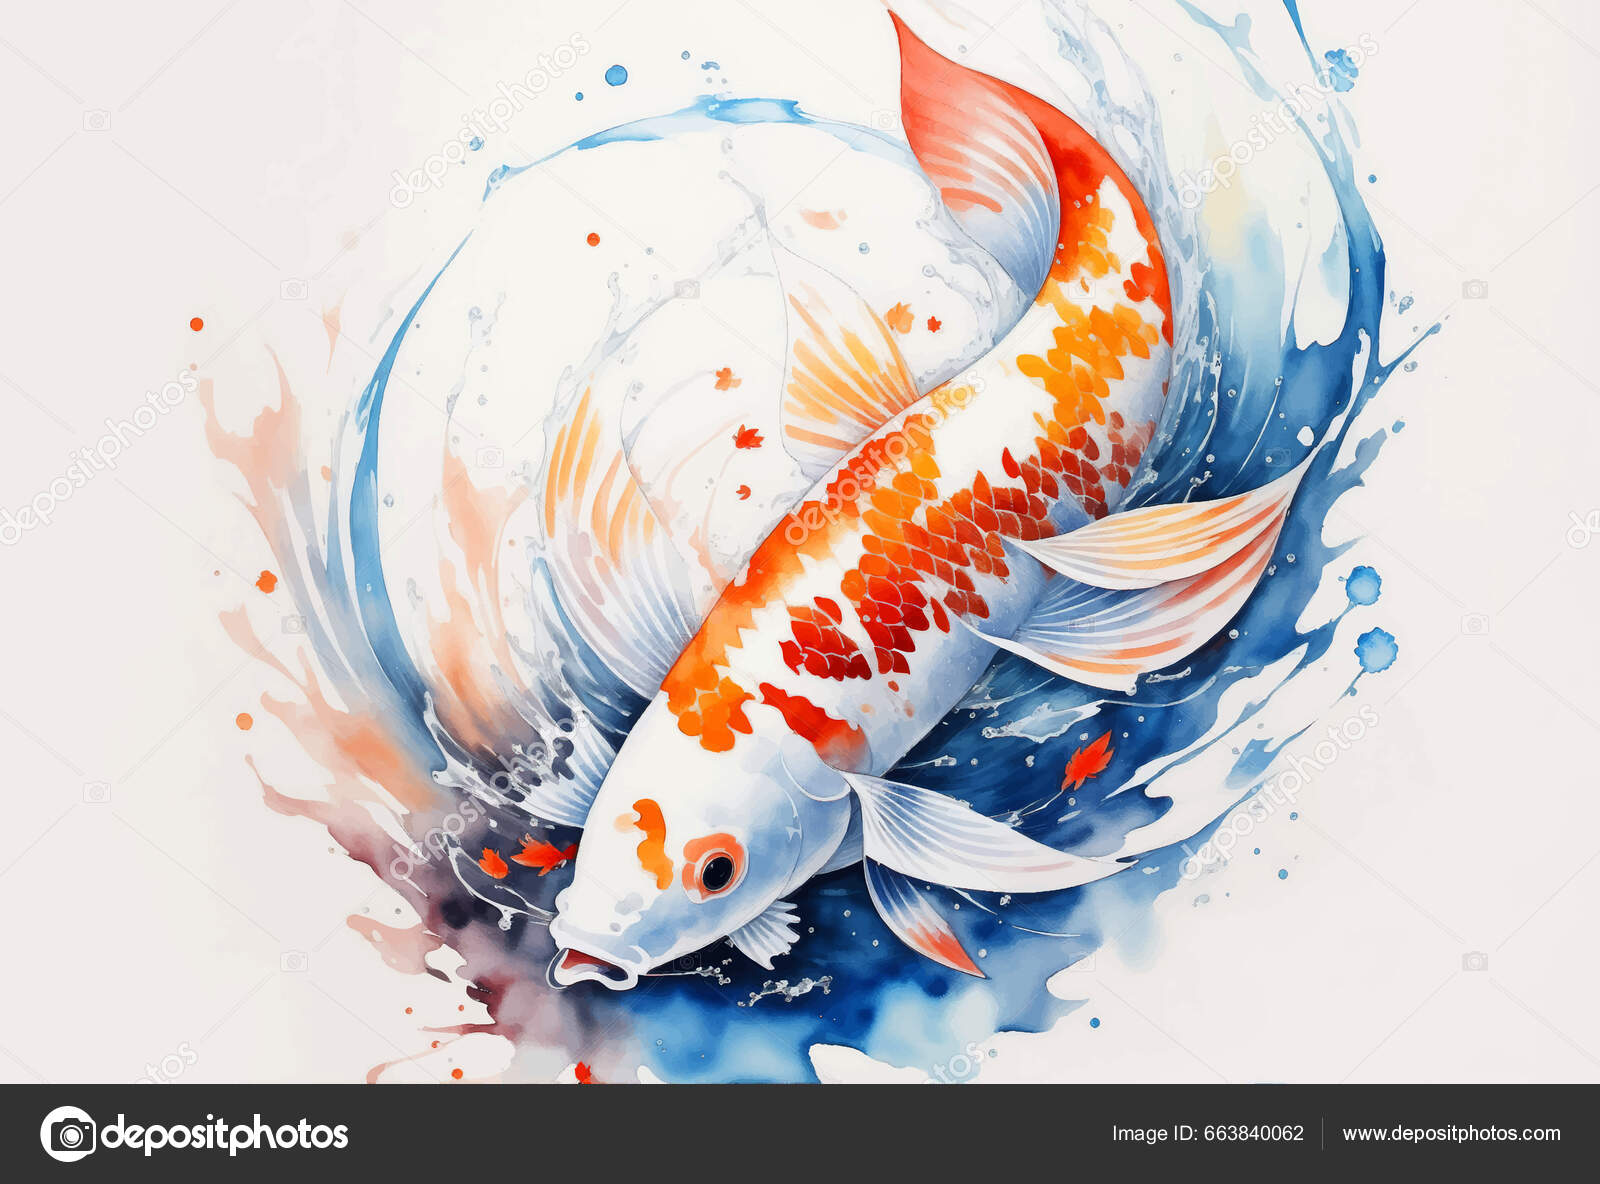 Koi Fish Painting Stock Illustrations, Cliparts and Royalty Free Koi Fish  Painting Vectors